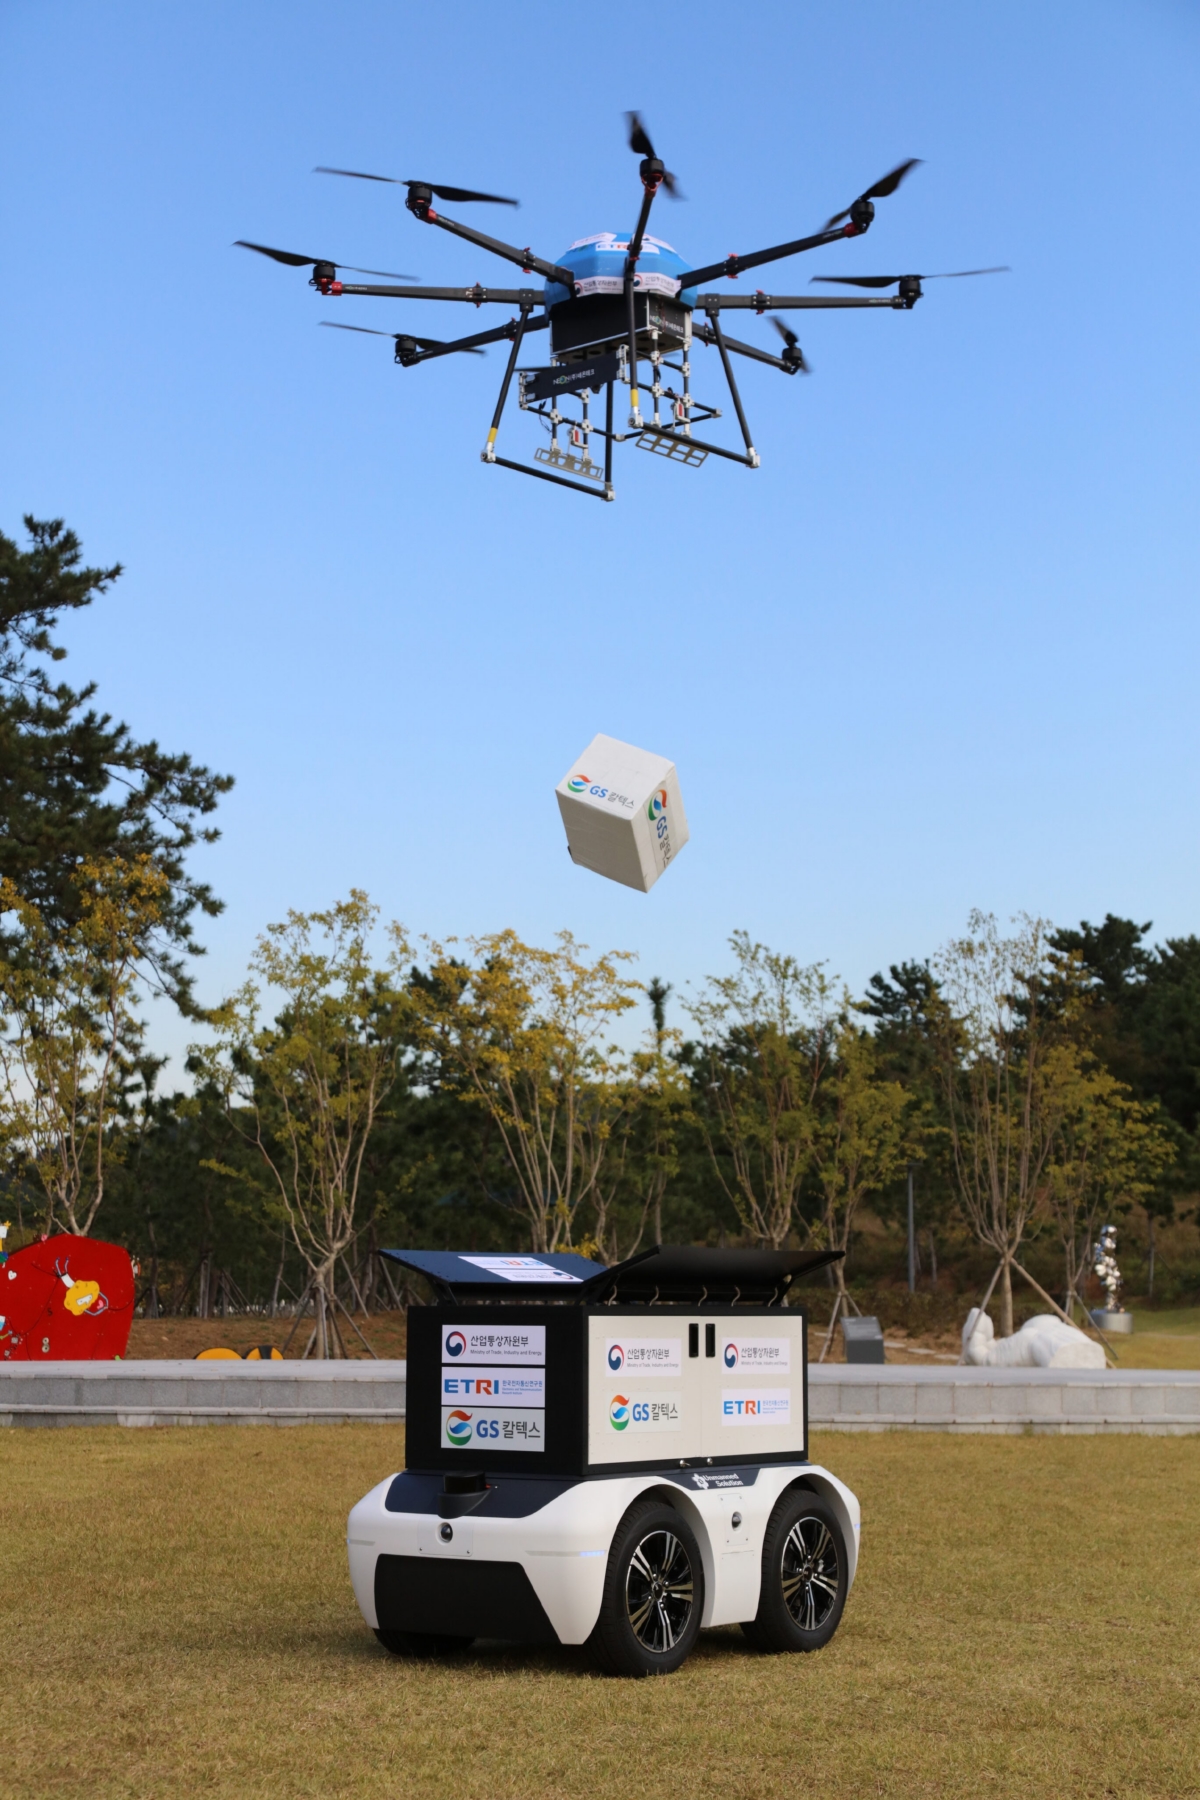 13일 여수 장도 잔디광장에서 드론이 상공에서 상품을 투하해 로봇에게 전달하고 있다.